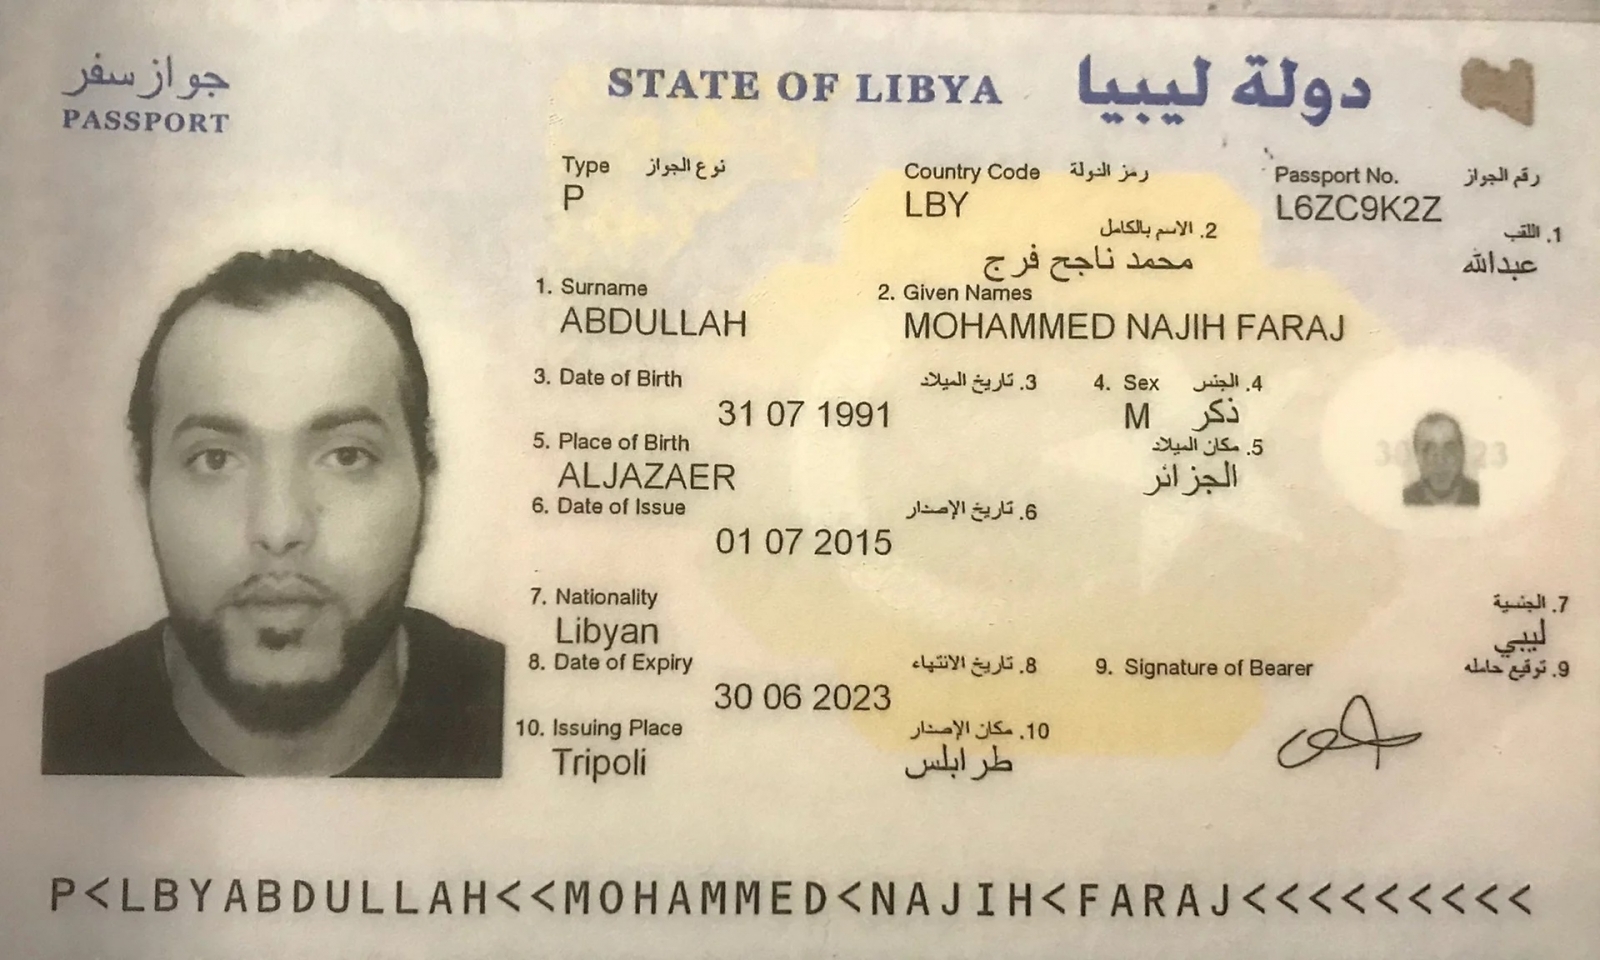 Фотография паспорта на арабском